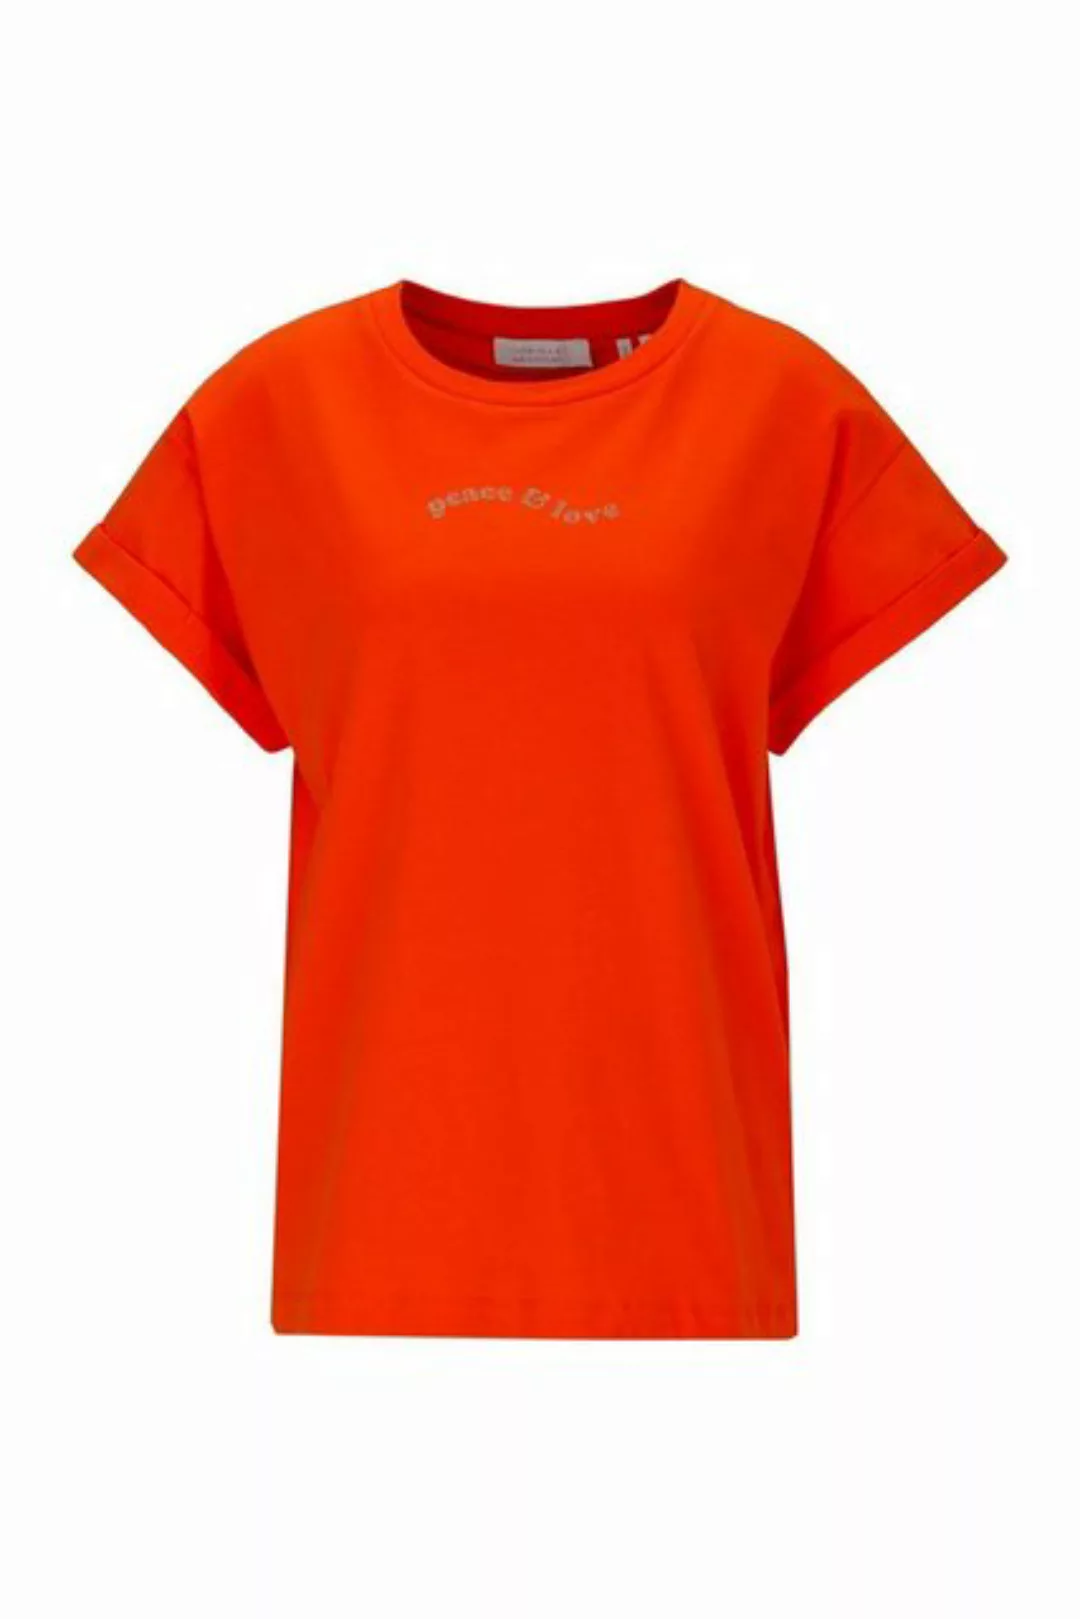 Rich & Royal T-Shirt Boyfriend-farbenes Strasssteine besetztes Bio-Shirt günstig online kaufen